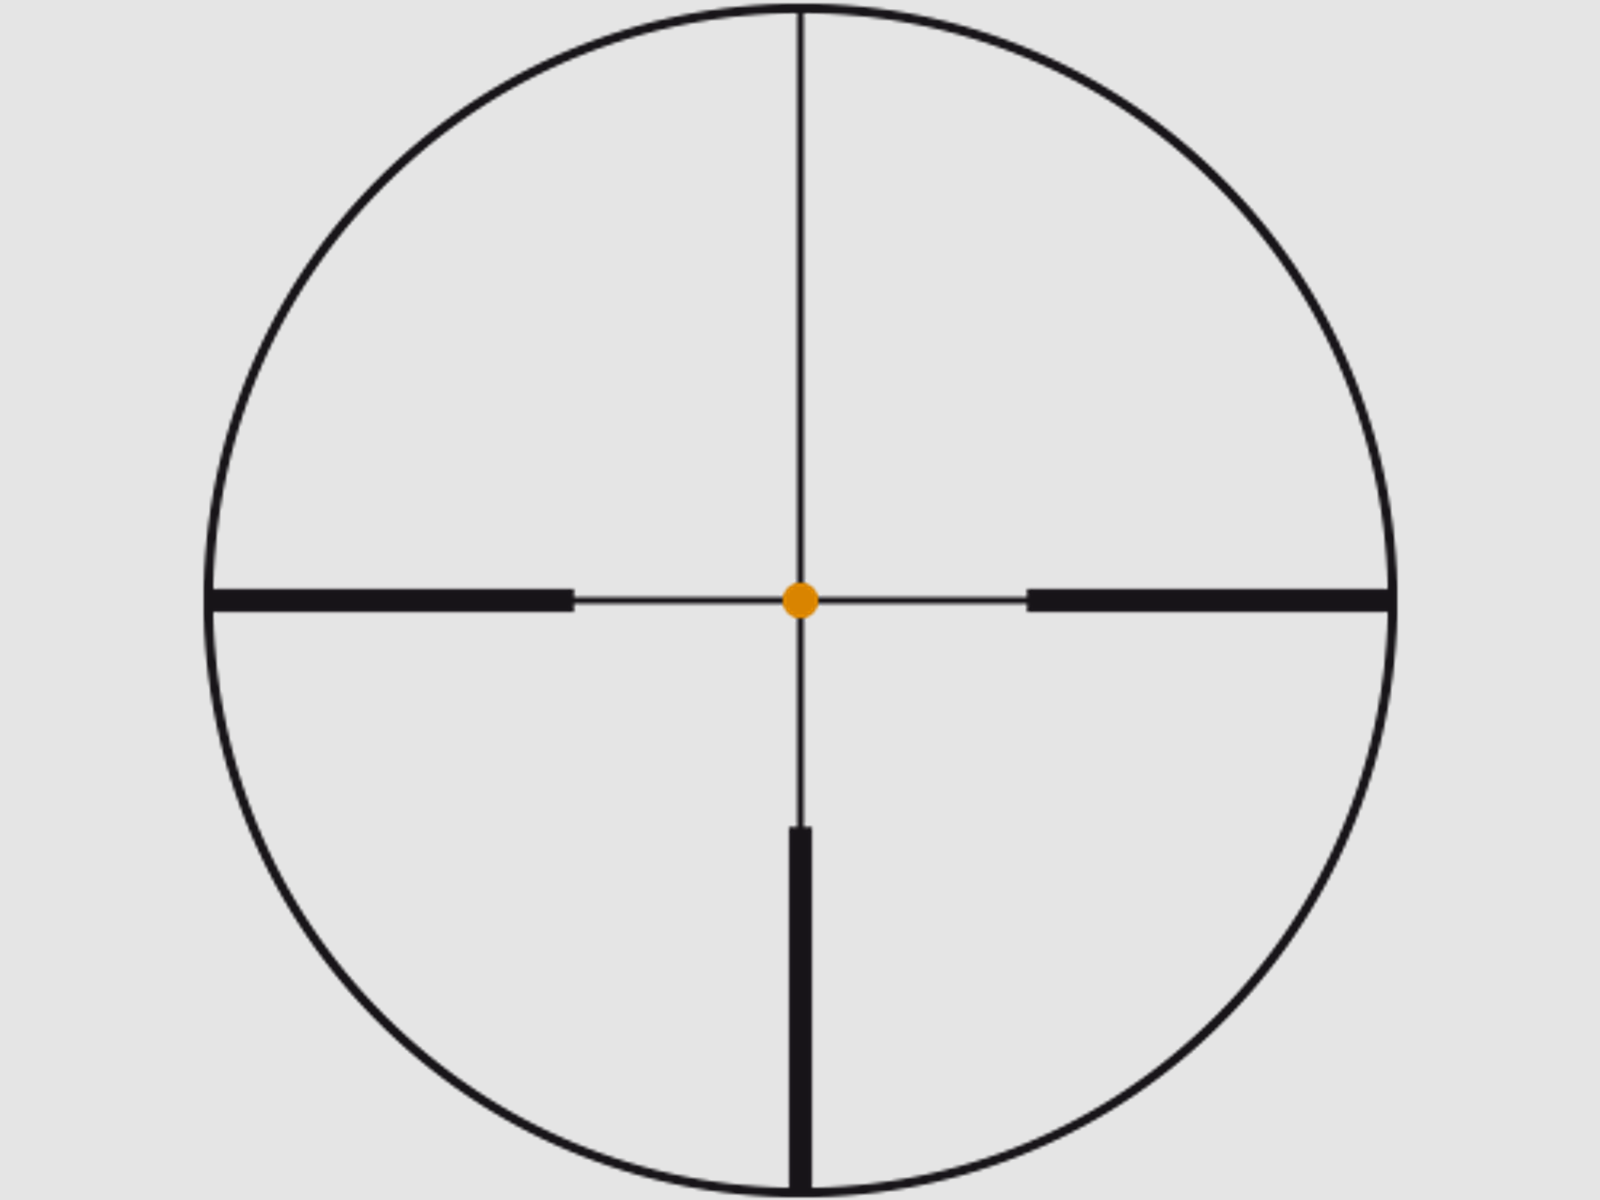 SWAROVSKI Zielfernrohr mit Leuchtabsehen 2-12x50 BT Z6i L (30mm) Abs. 4AI